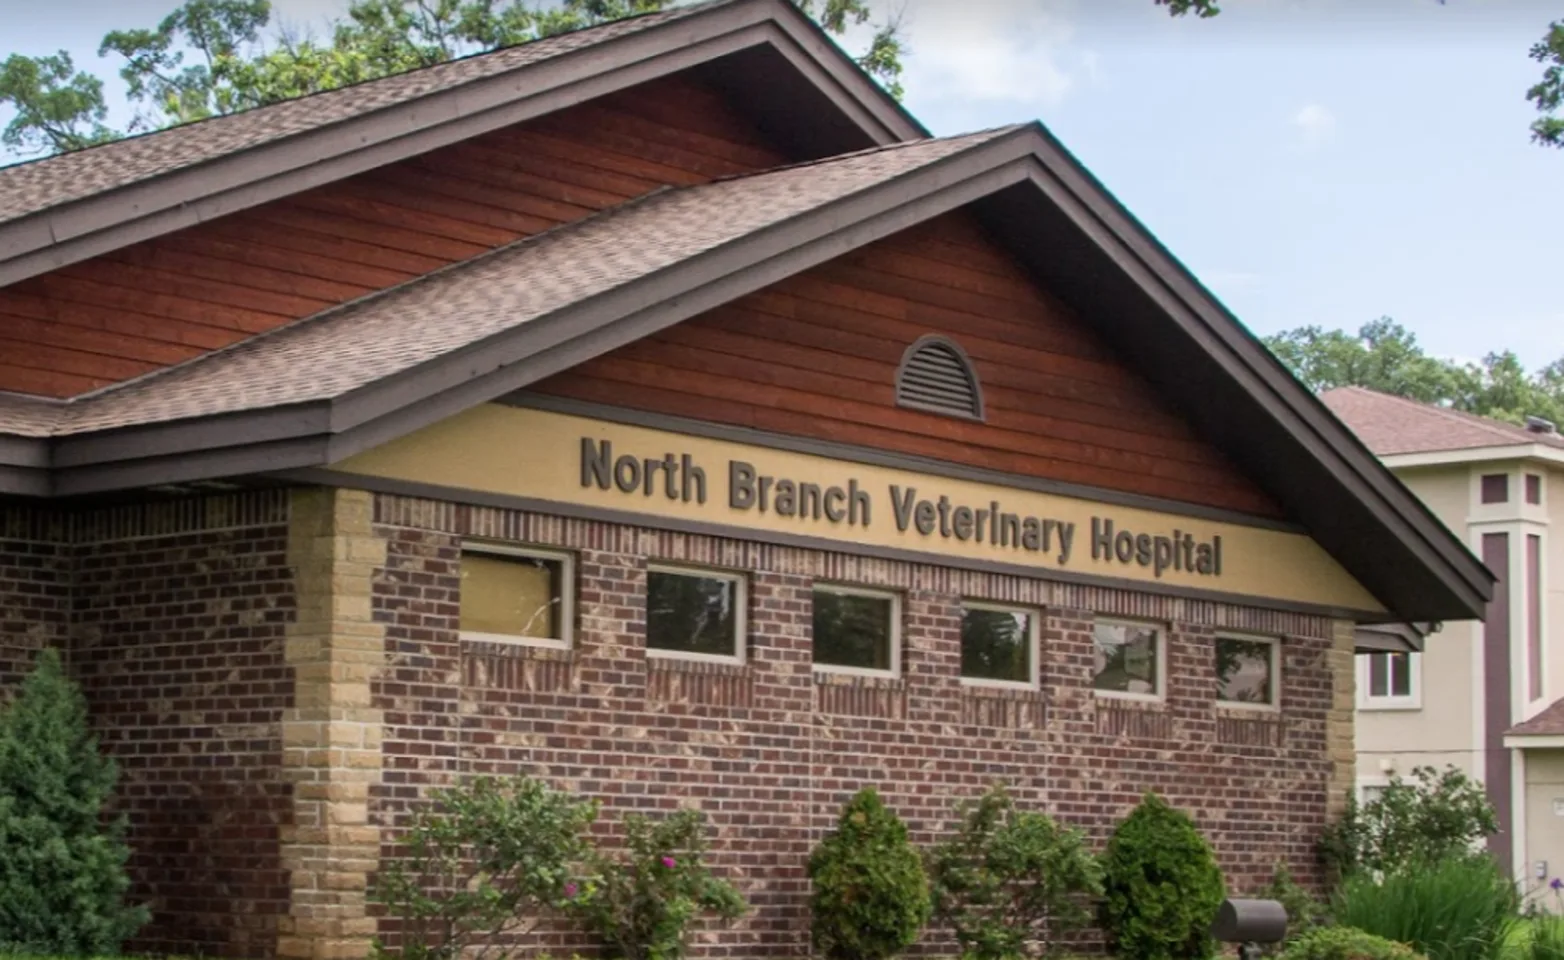 North Branch Veterinary Hospital building exterior